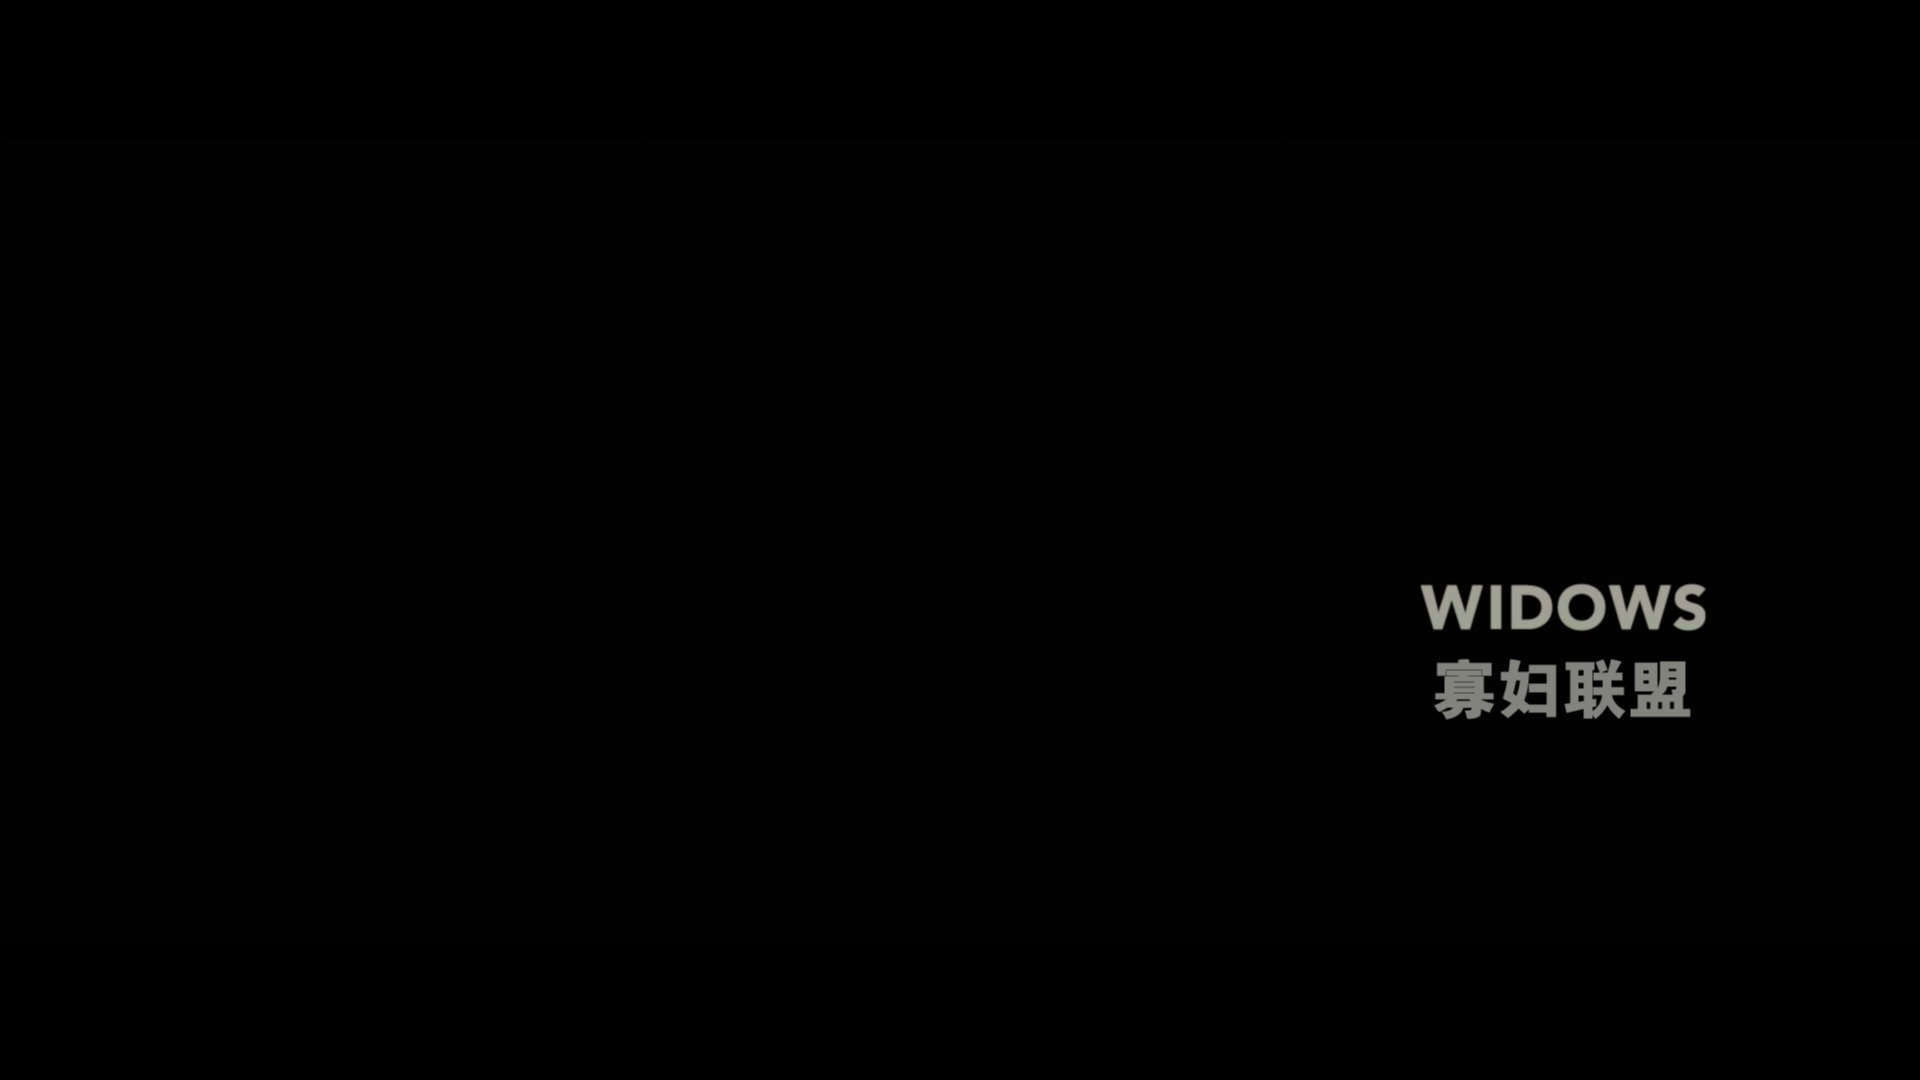 寡妇联盟 / 寡妇(台) / 寡妇劫案 [DIY简繁英双语字幕] Widows 2018 UHD BluRay 2160p HEVC TrueHD Atmos 7.1-AA@OurBits    [58.35 GB]-2.jpg